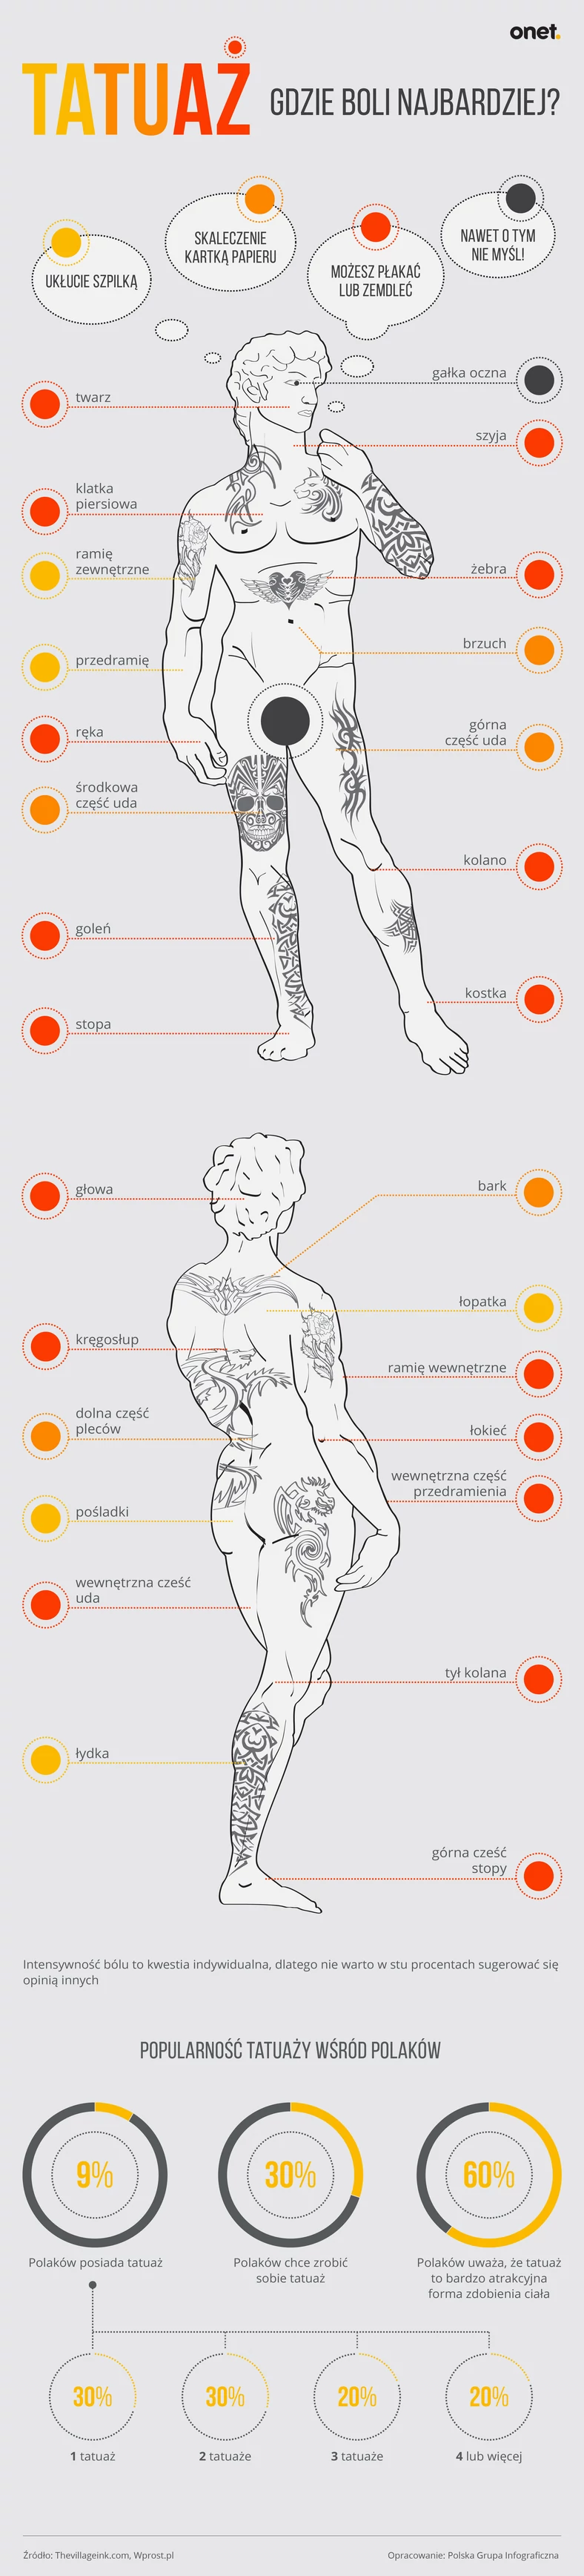 Tatuaże - gdzie boli najbardziej [INFOGRAFIKA]